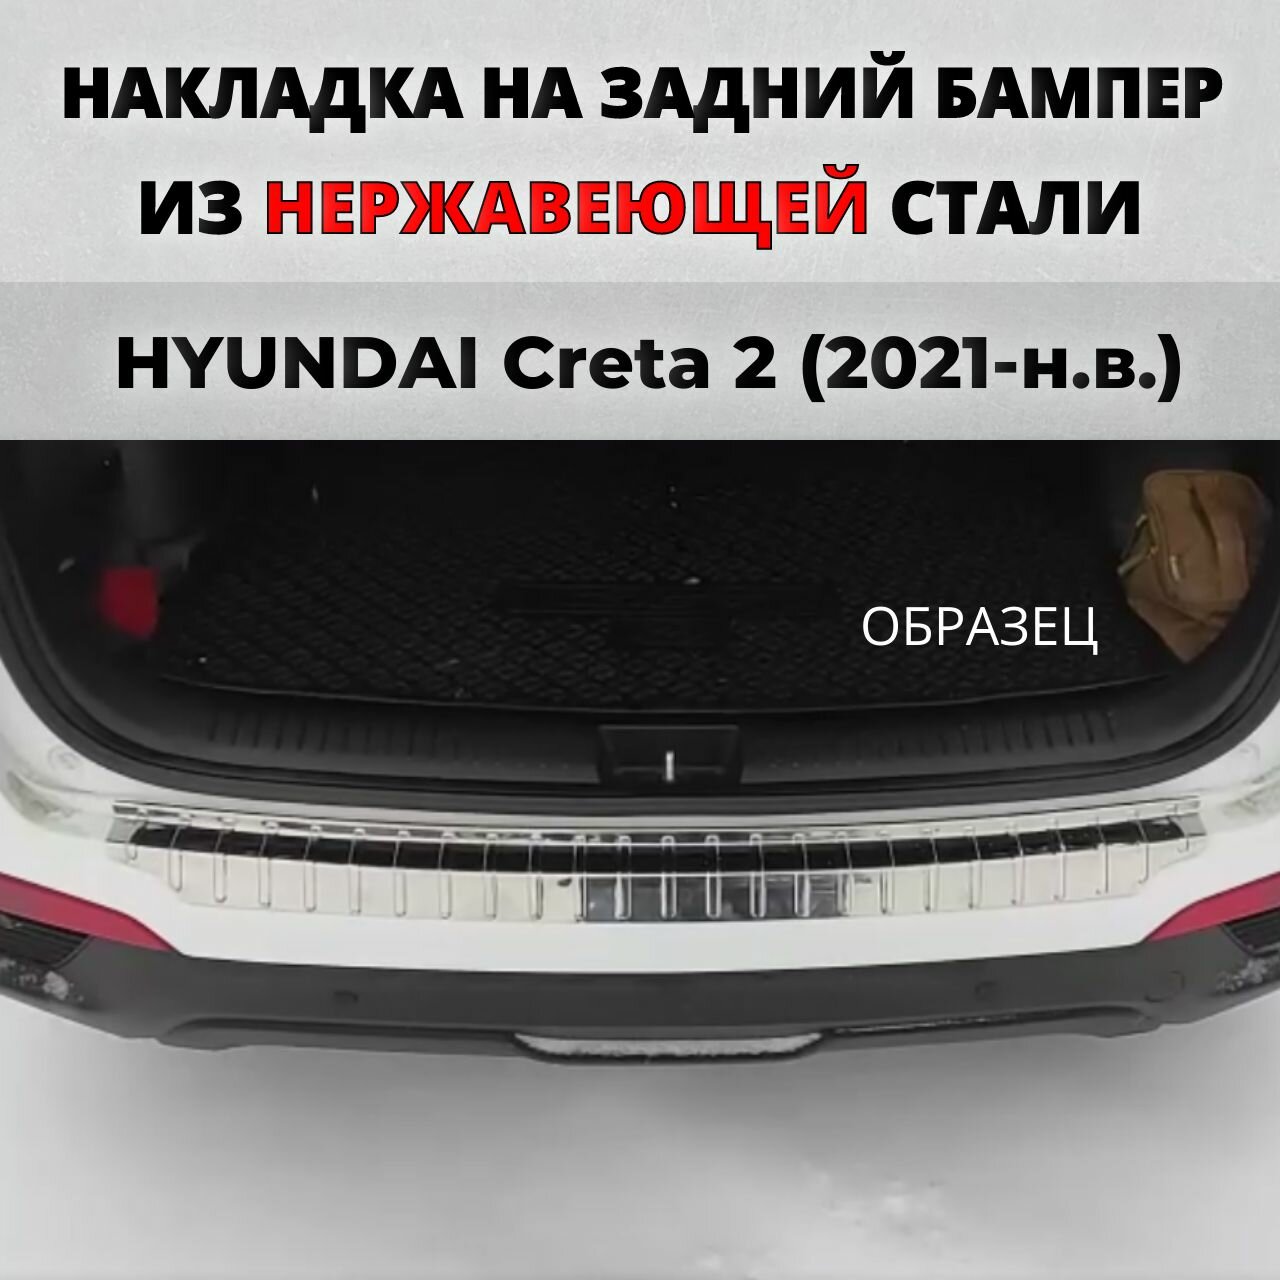 Накладка на задний бампер Хендай Крета 2 2021-н. в. с загибом нерж. сталь / защита бампера HYUNDAI Creta